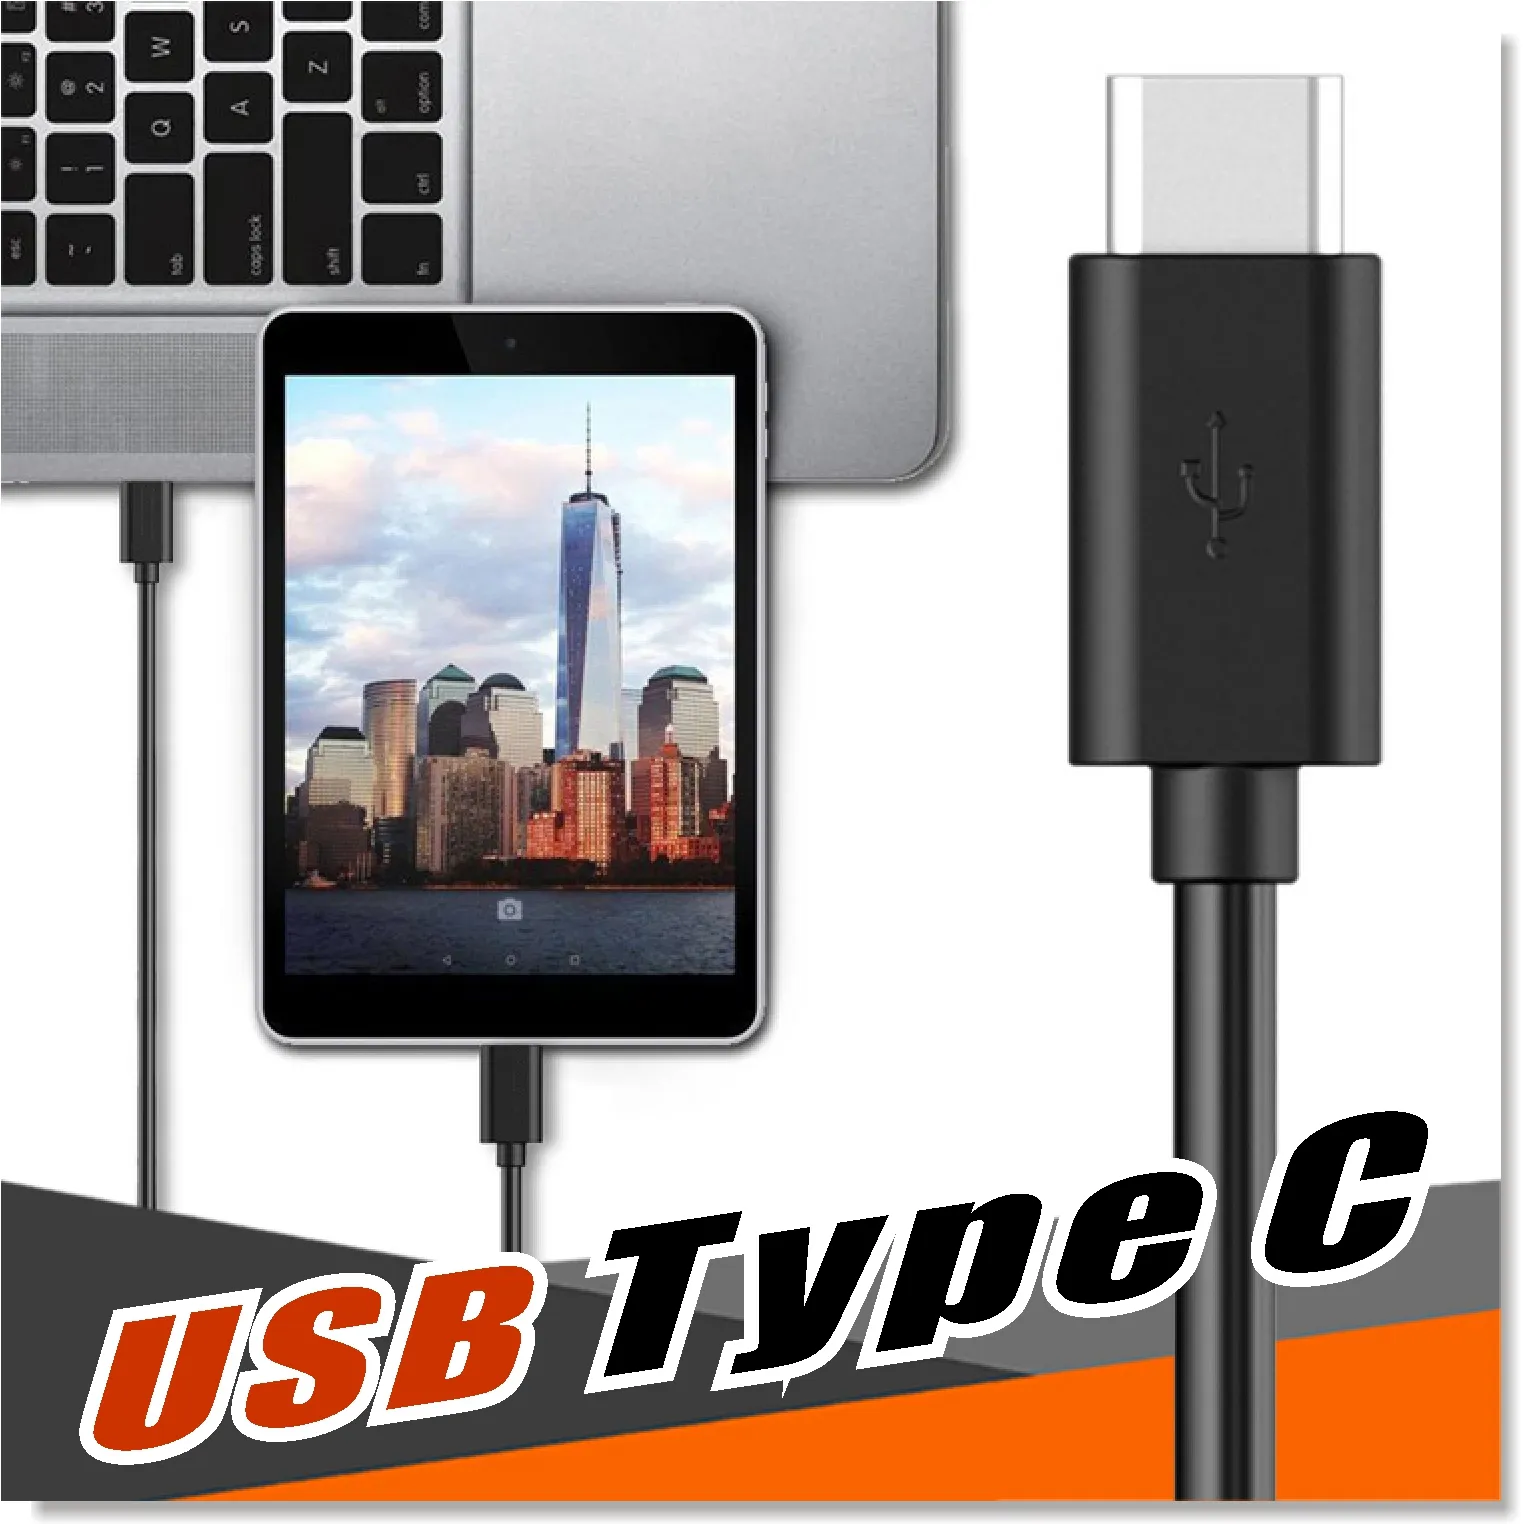 USB Type C Kabel USB Lader 3.1 naar USB 2.0 A Male Data Oplaadkabel voor Nexus 5X Nexus 6P Pixel C Samsung